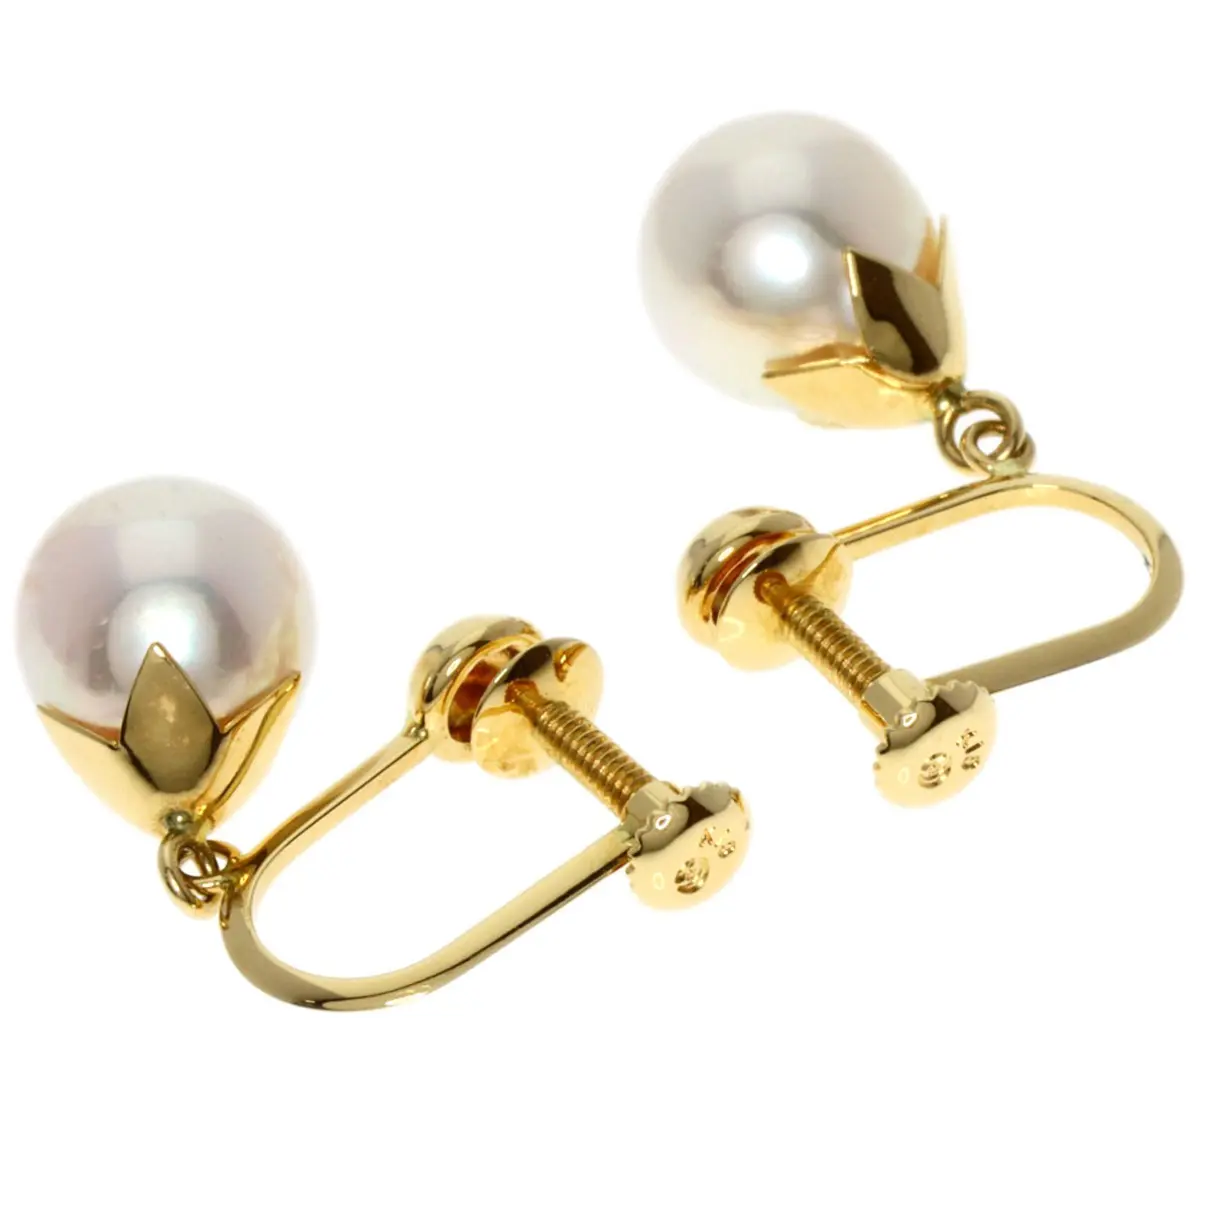 Buy Tasaki Yellow gold earrings online